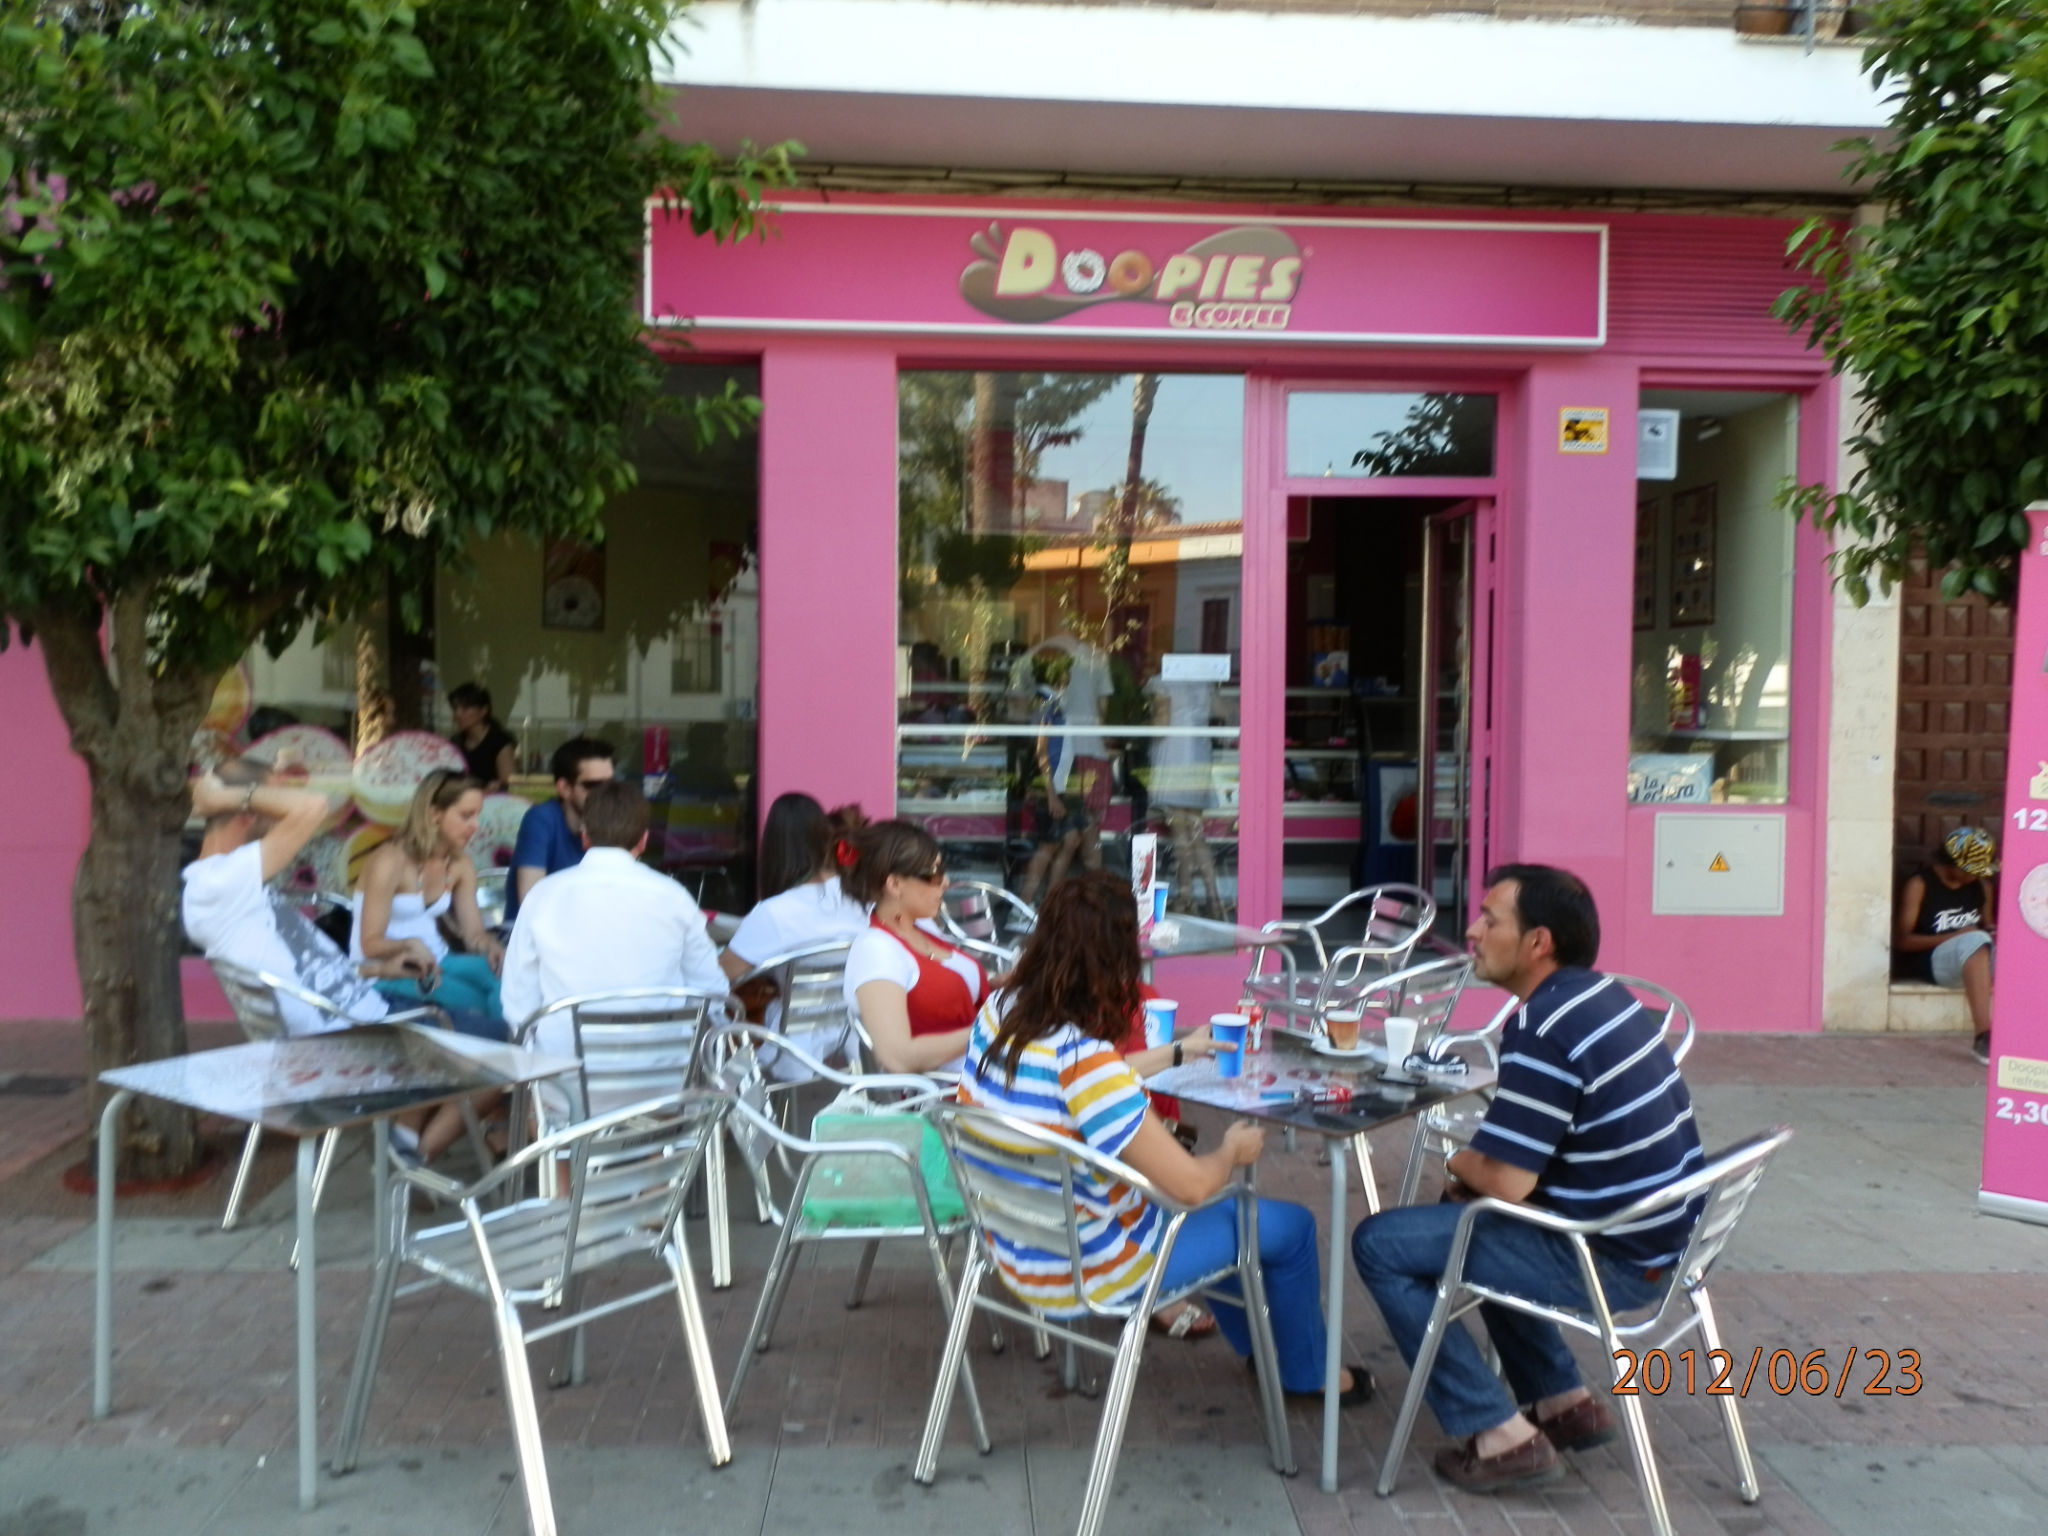 Doopies And Coffee abre una nueva tienda  tienda en Badajoz.